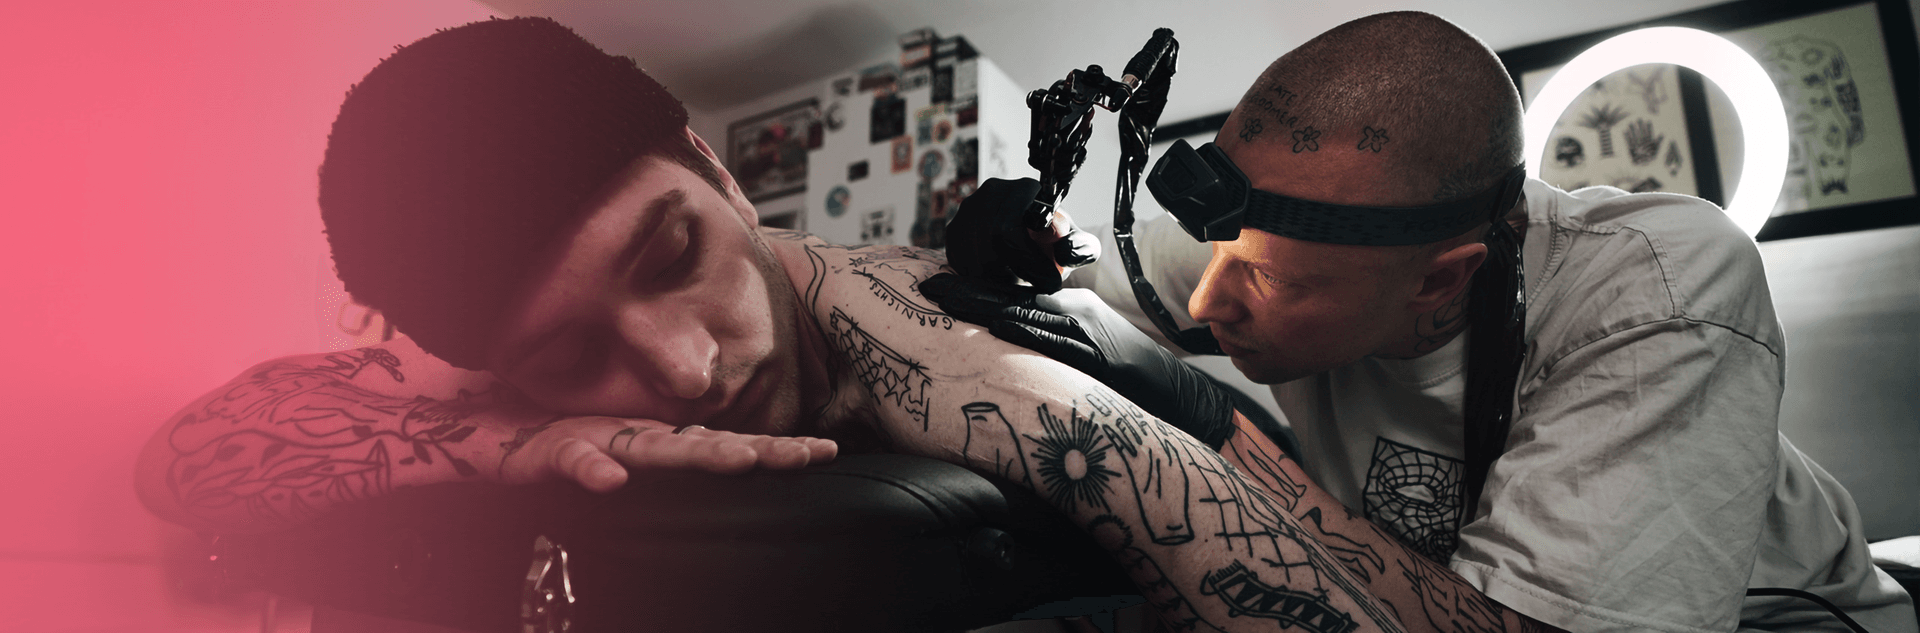 Flaesh: Tattoo-Geschichten, die unter die Haut gehen